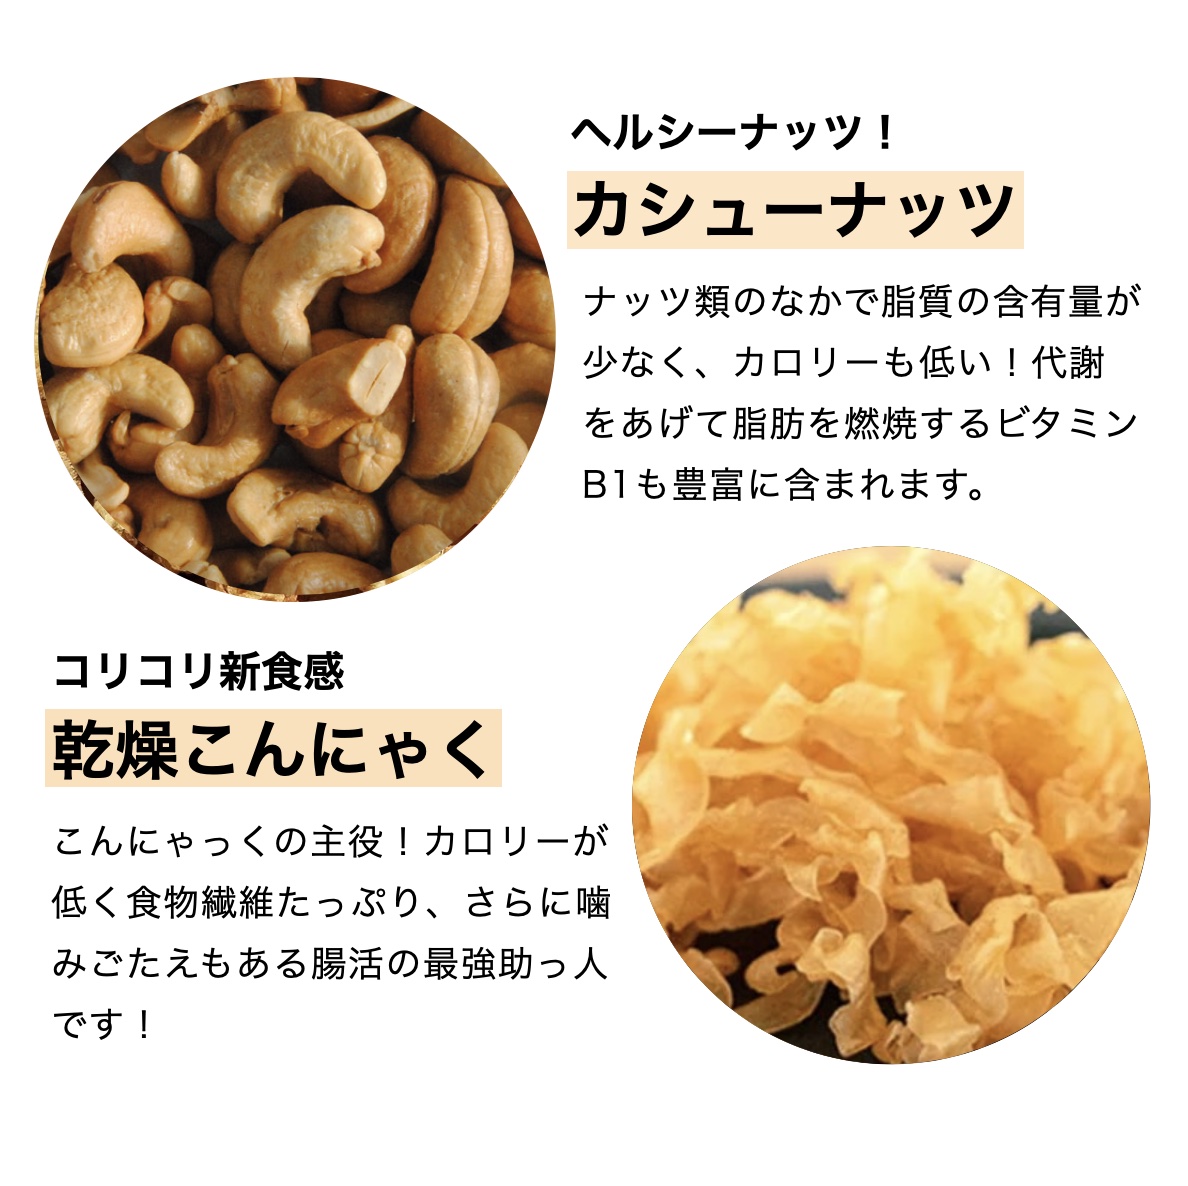 こんにゃっくに入っているカシューナッツと乾燥こんにゃくの栄養価と効果について説明している画像イメージ